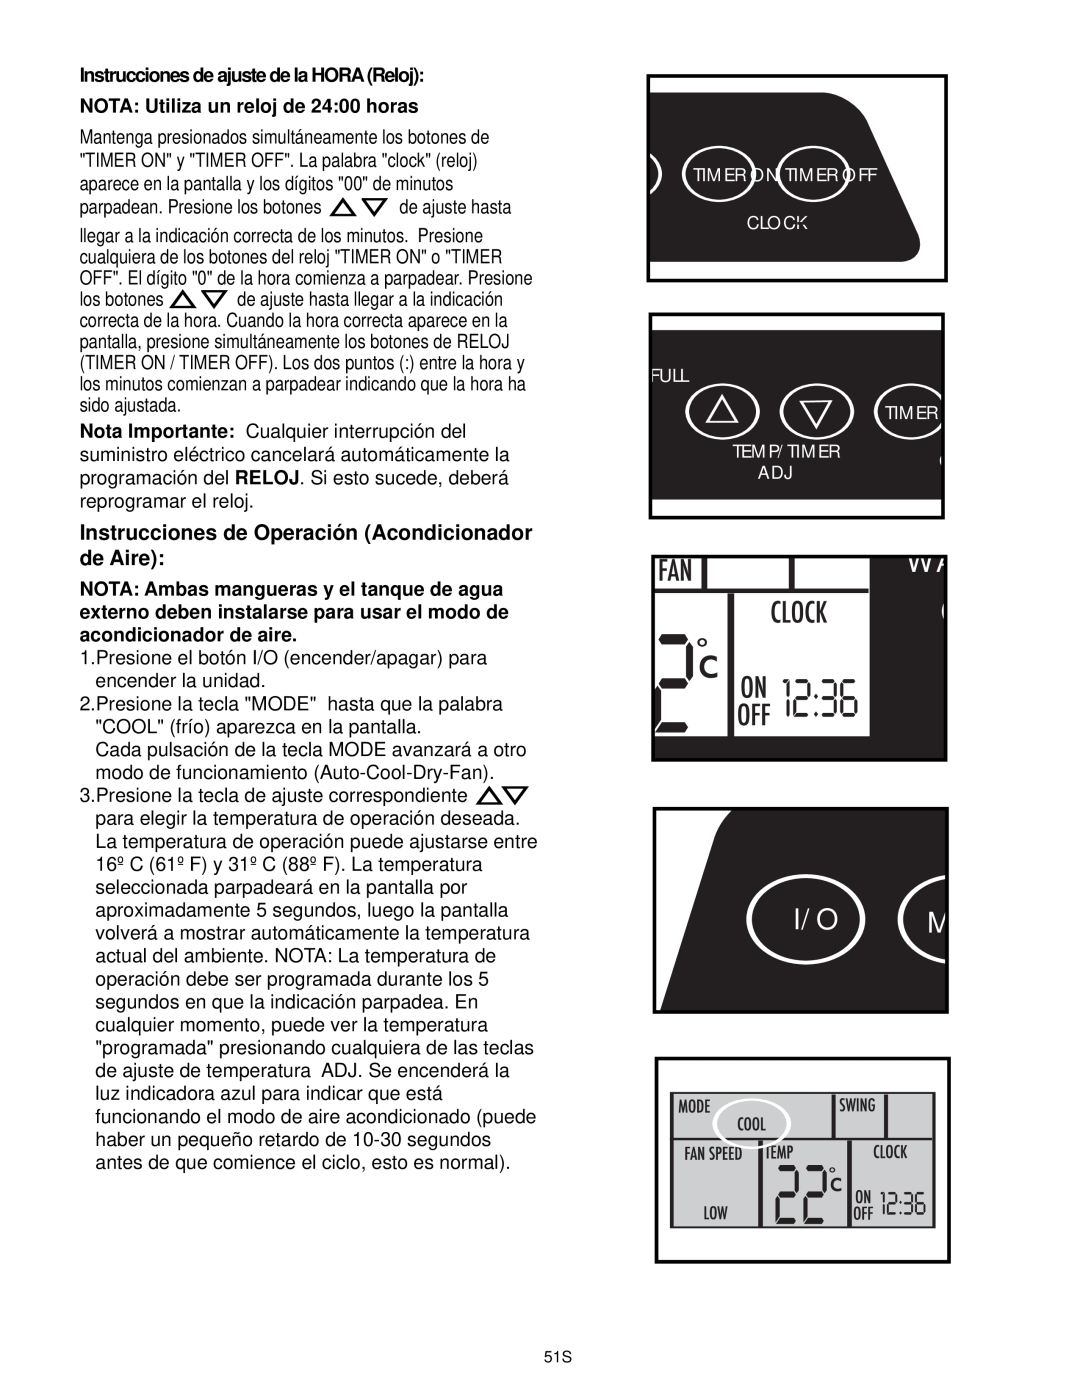 Danby DPAC9030 Instrucciones de ajuste de la HORA Reloj, NOTA: Utiliza un reloj de 24:00 horas, acondicionador de aire 